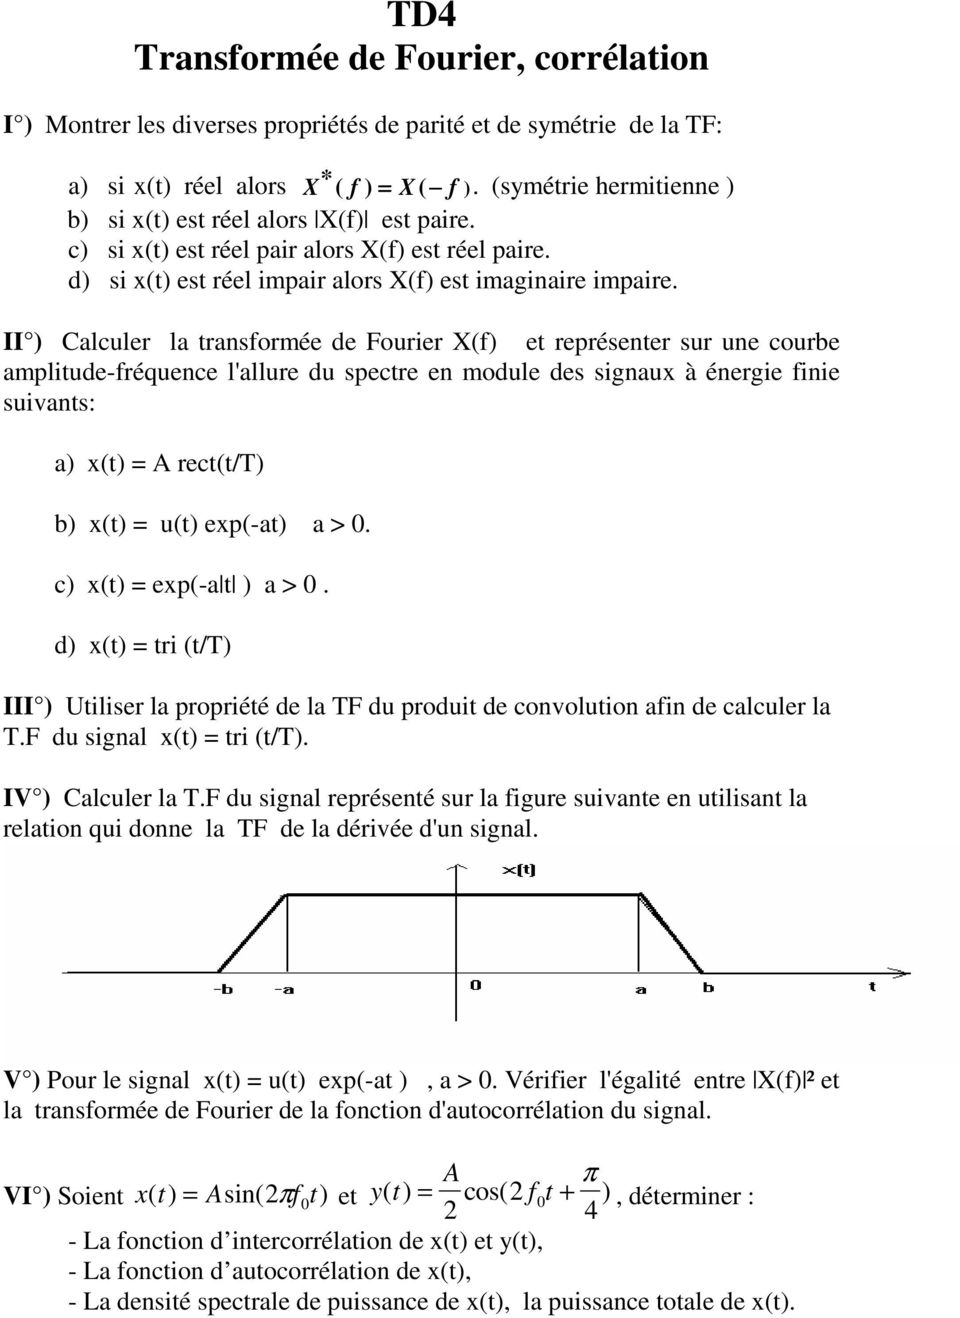 II ) Calculer la transformée de Fourier X(f) et représenter sur une courbe amplitude-fréquence l'allure du spectre en module des signaux à énergie finie suivants: a) x(t) = A rect(t/t) b) x(t) = u(t)